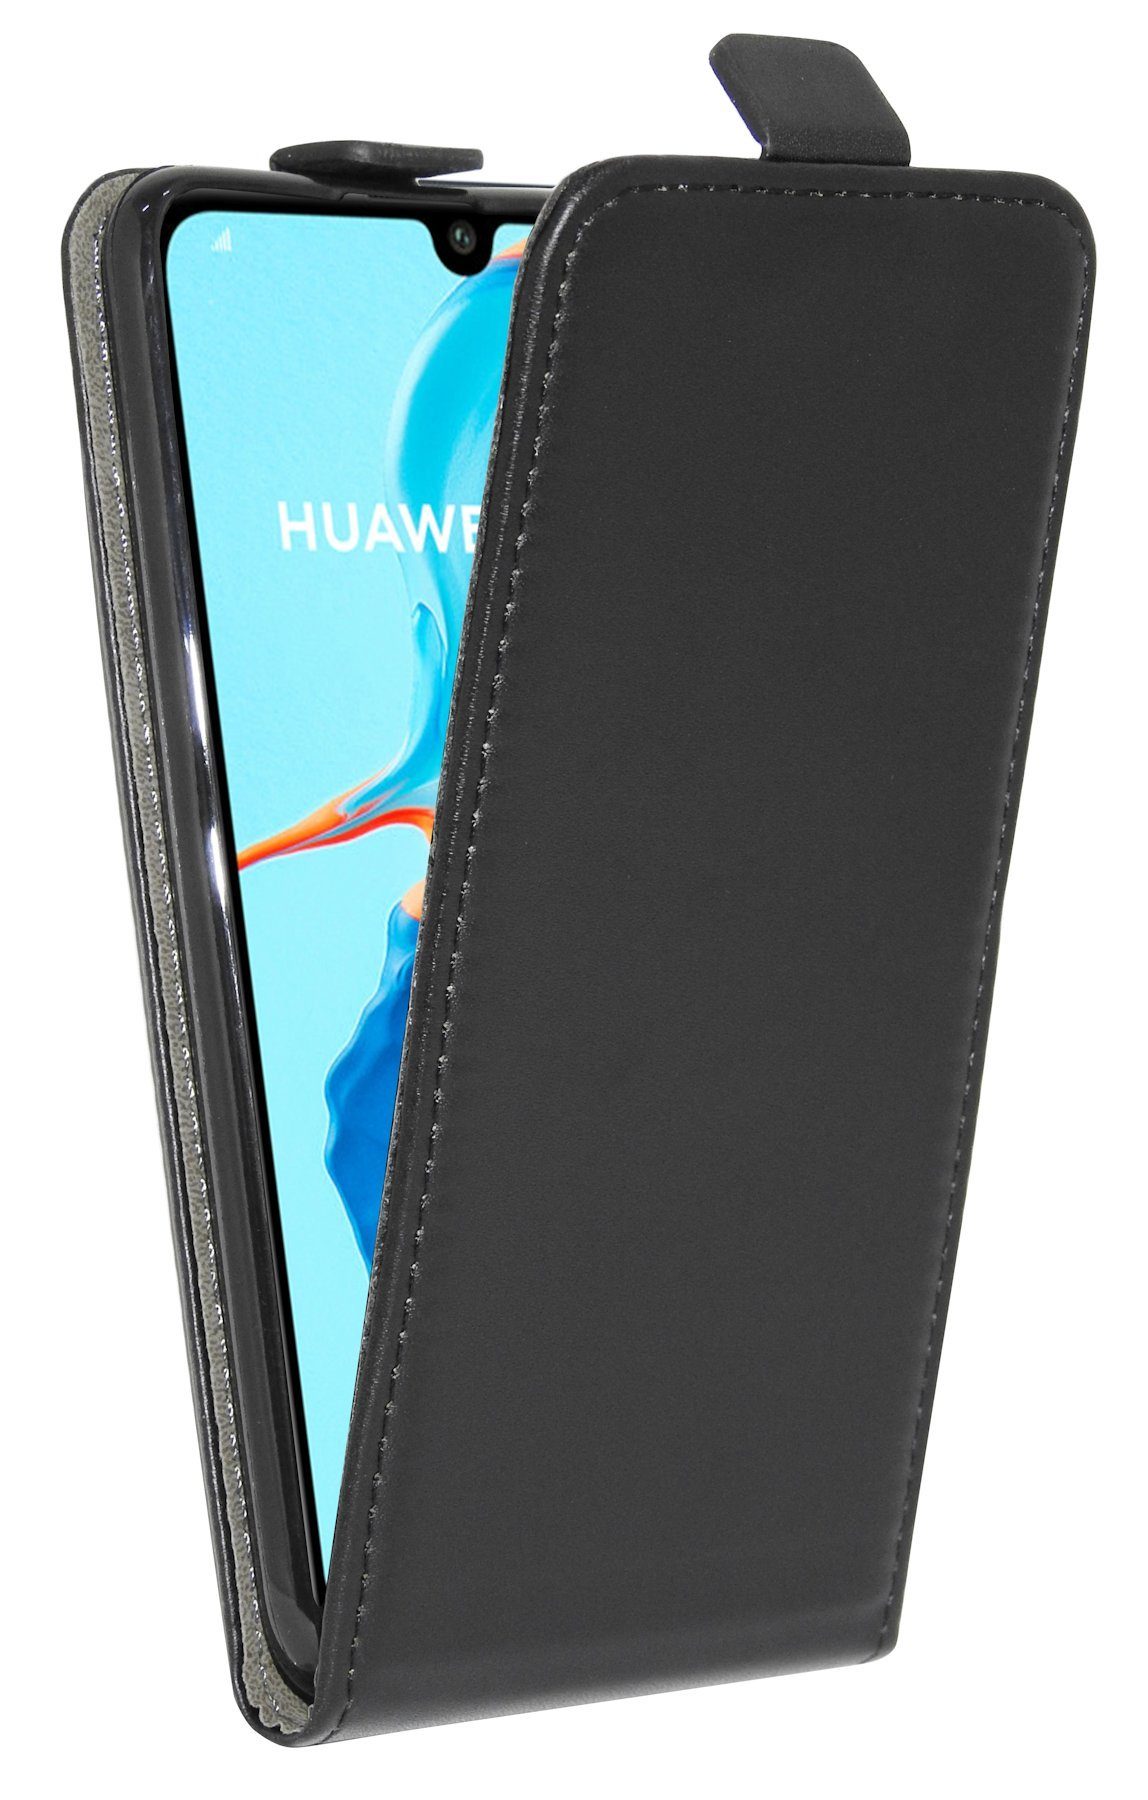 vertikal Case Klapp Handytasche kompatibel LITE Handy Schwarz Tasche cofi1453 mit aufklappbar HUAWEI Schutzhülle P30 Hülle Flip